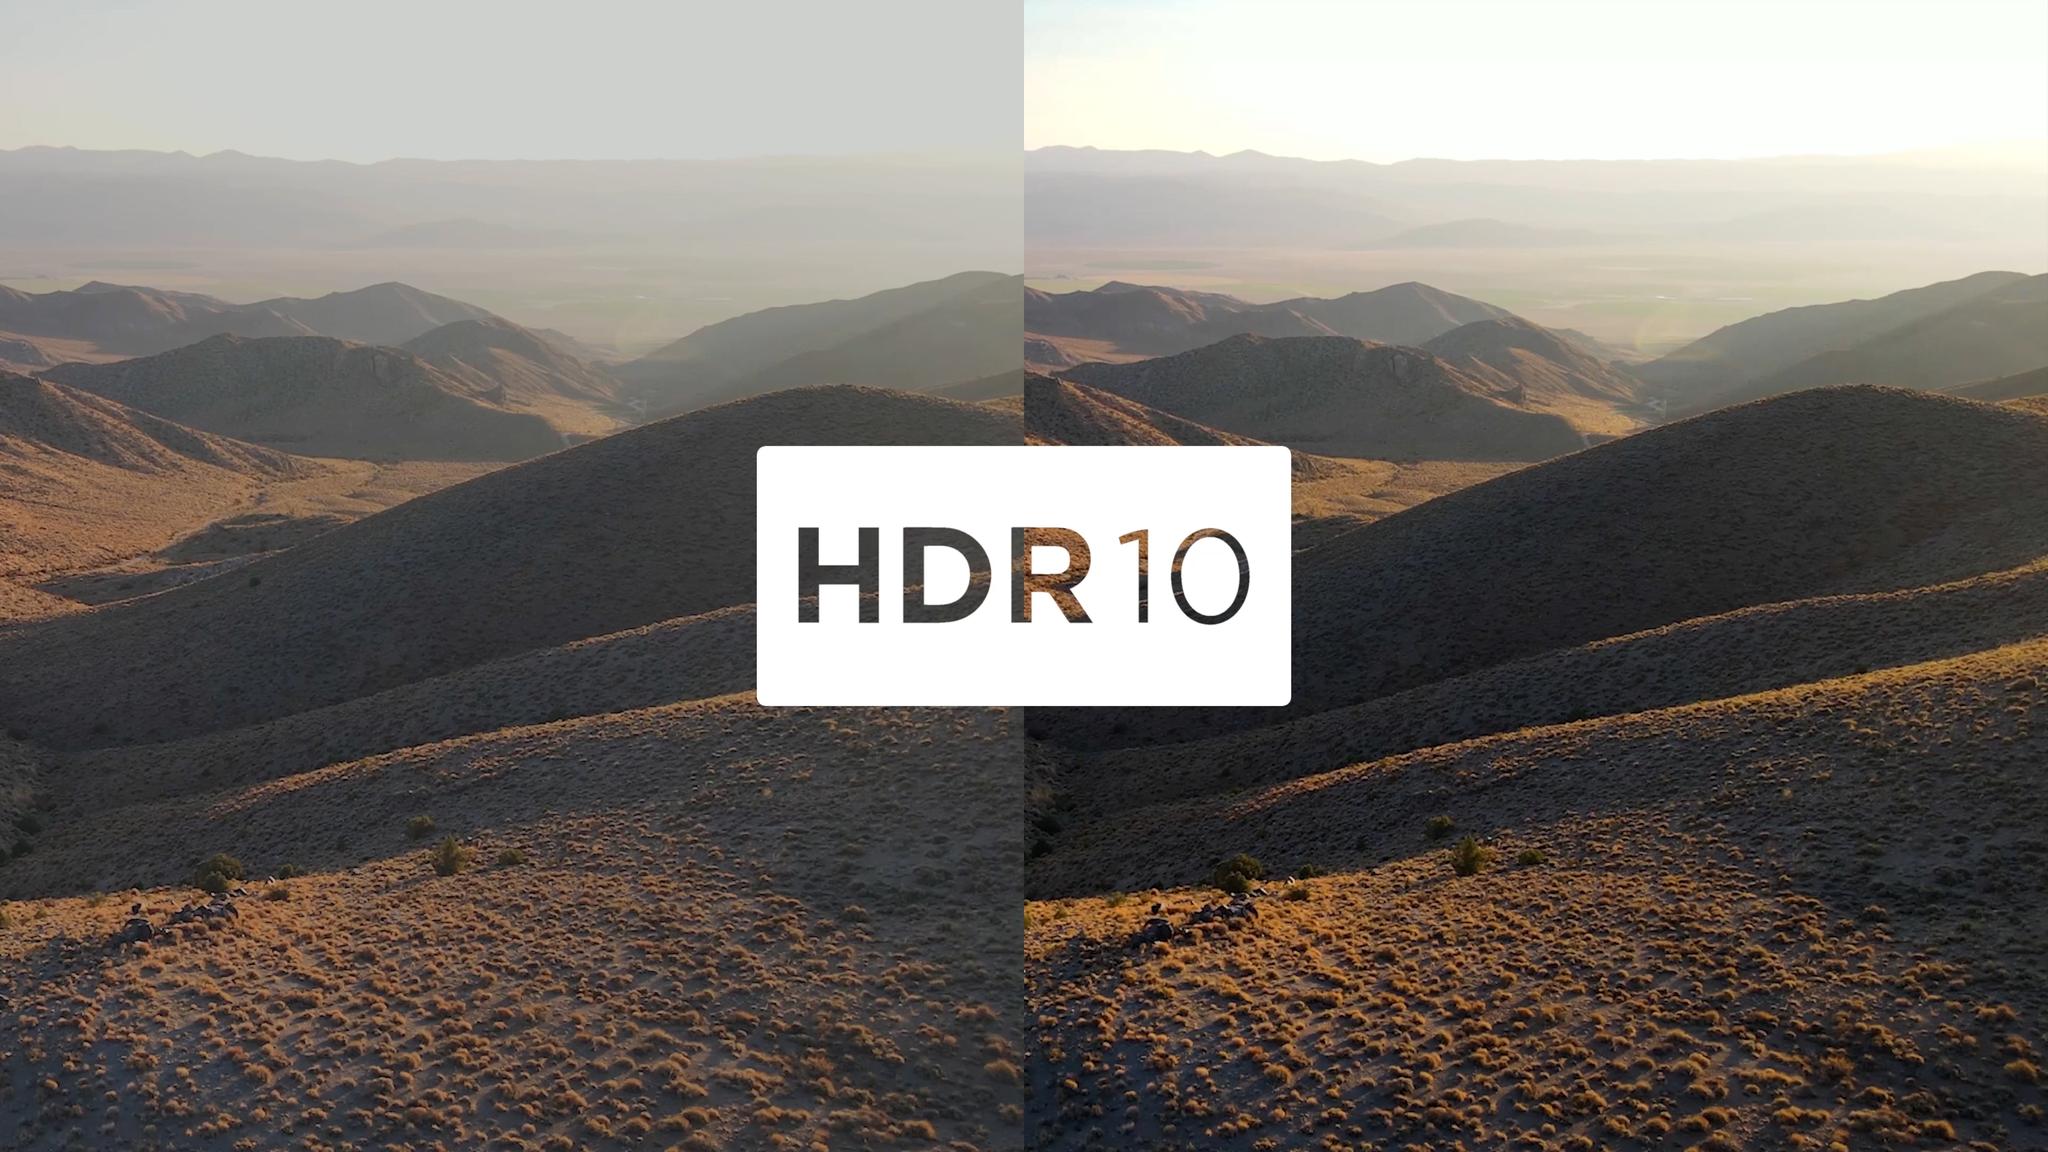 Imágenes únicas con resolución 4K UHD.